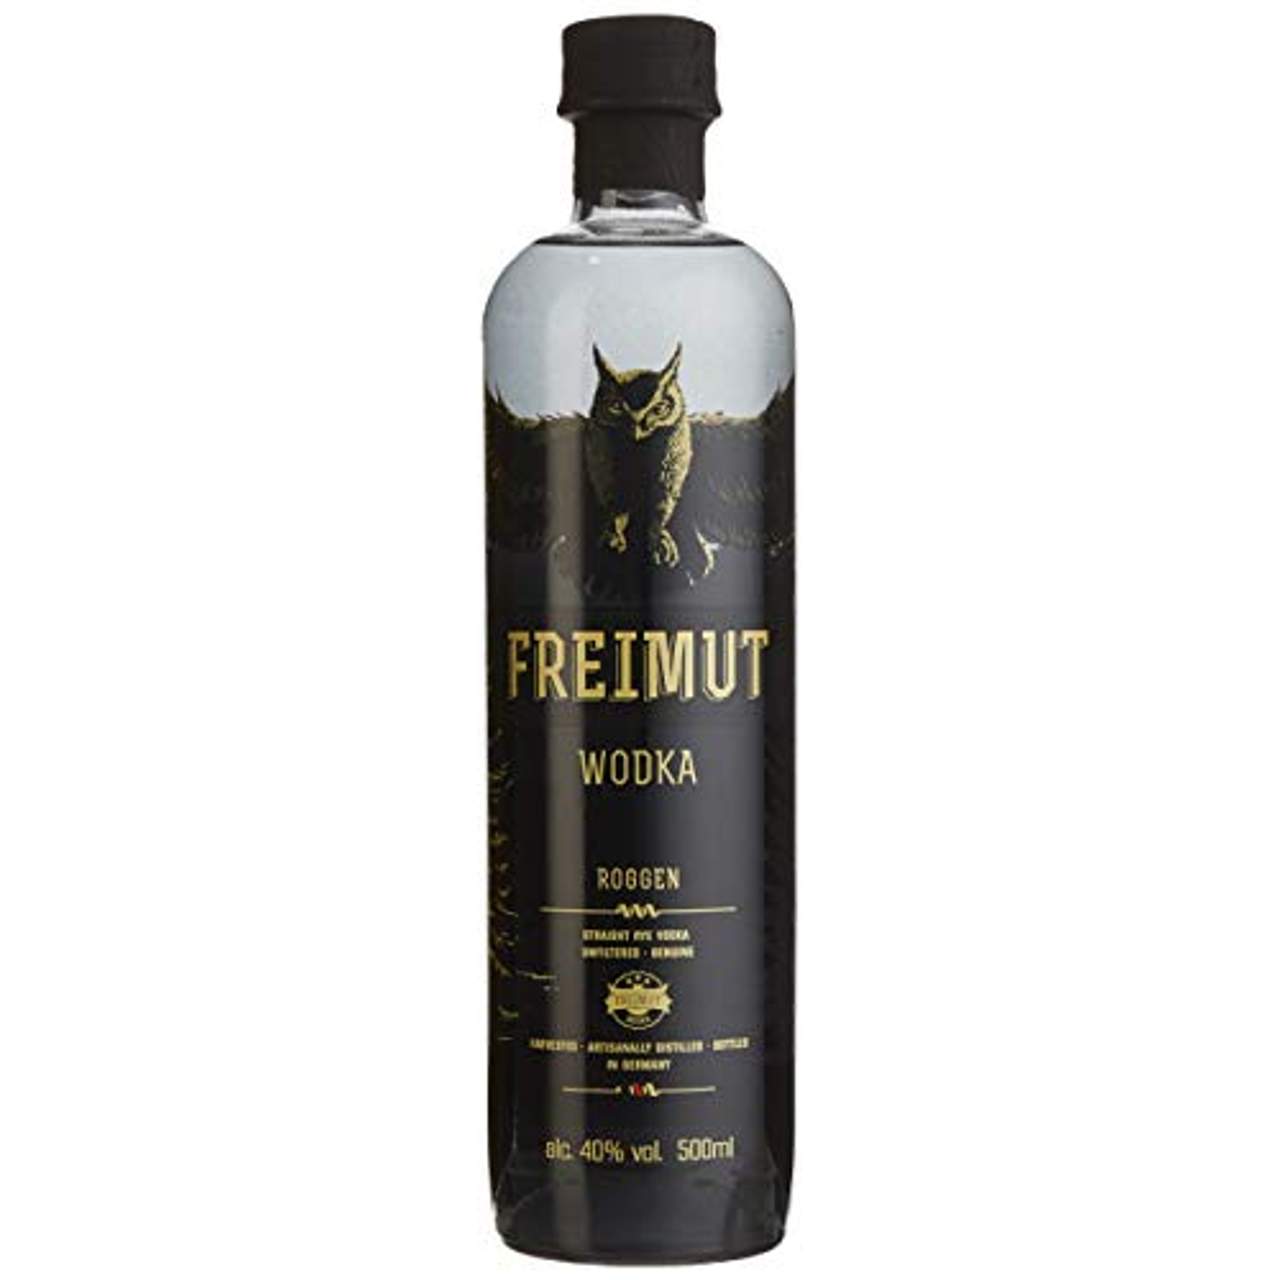 Freimut Wodka